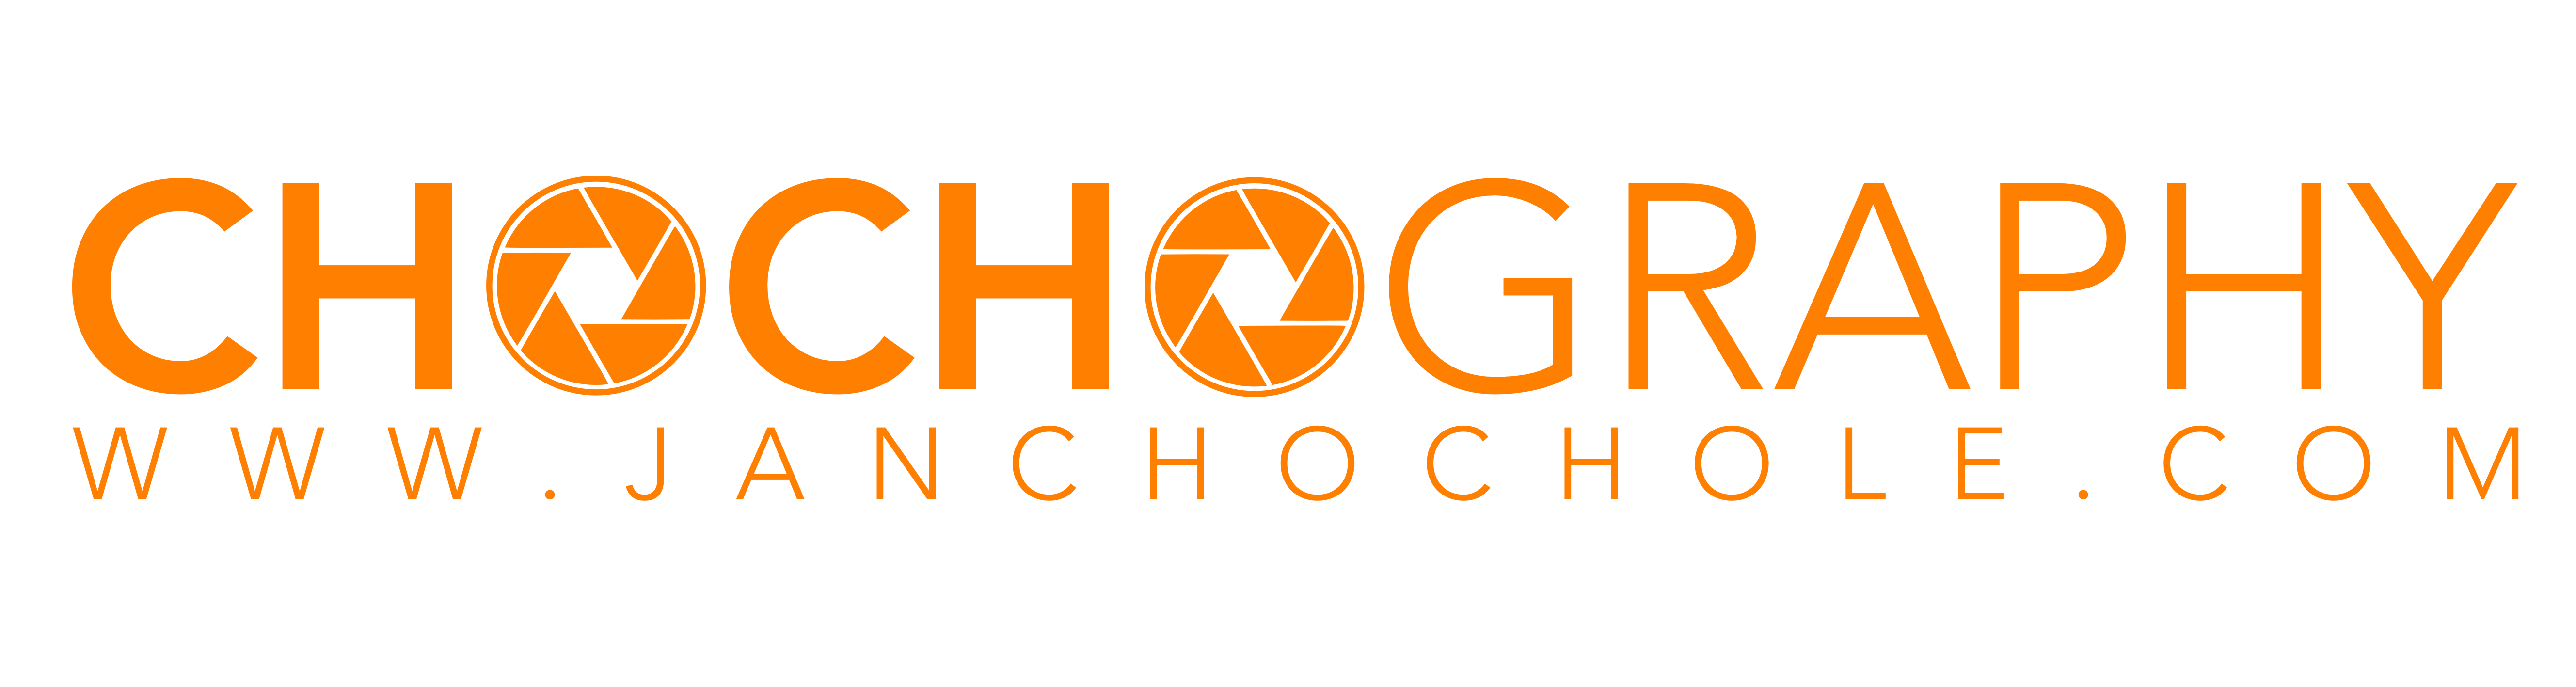 Logo Chochography